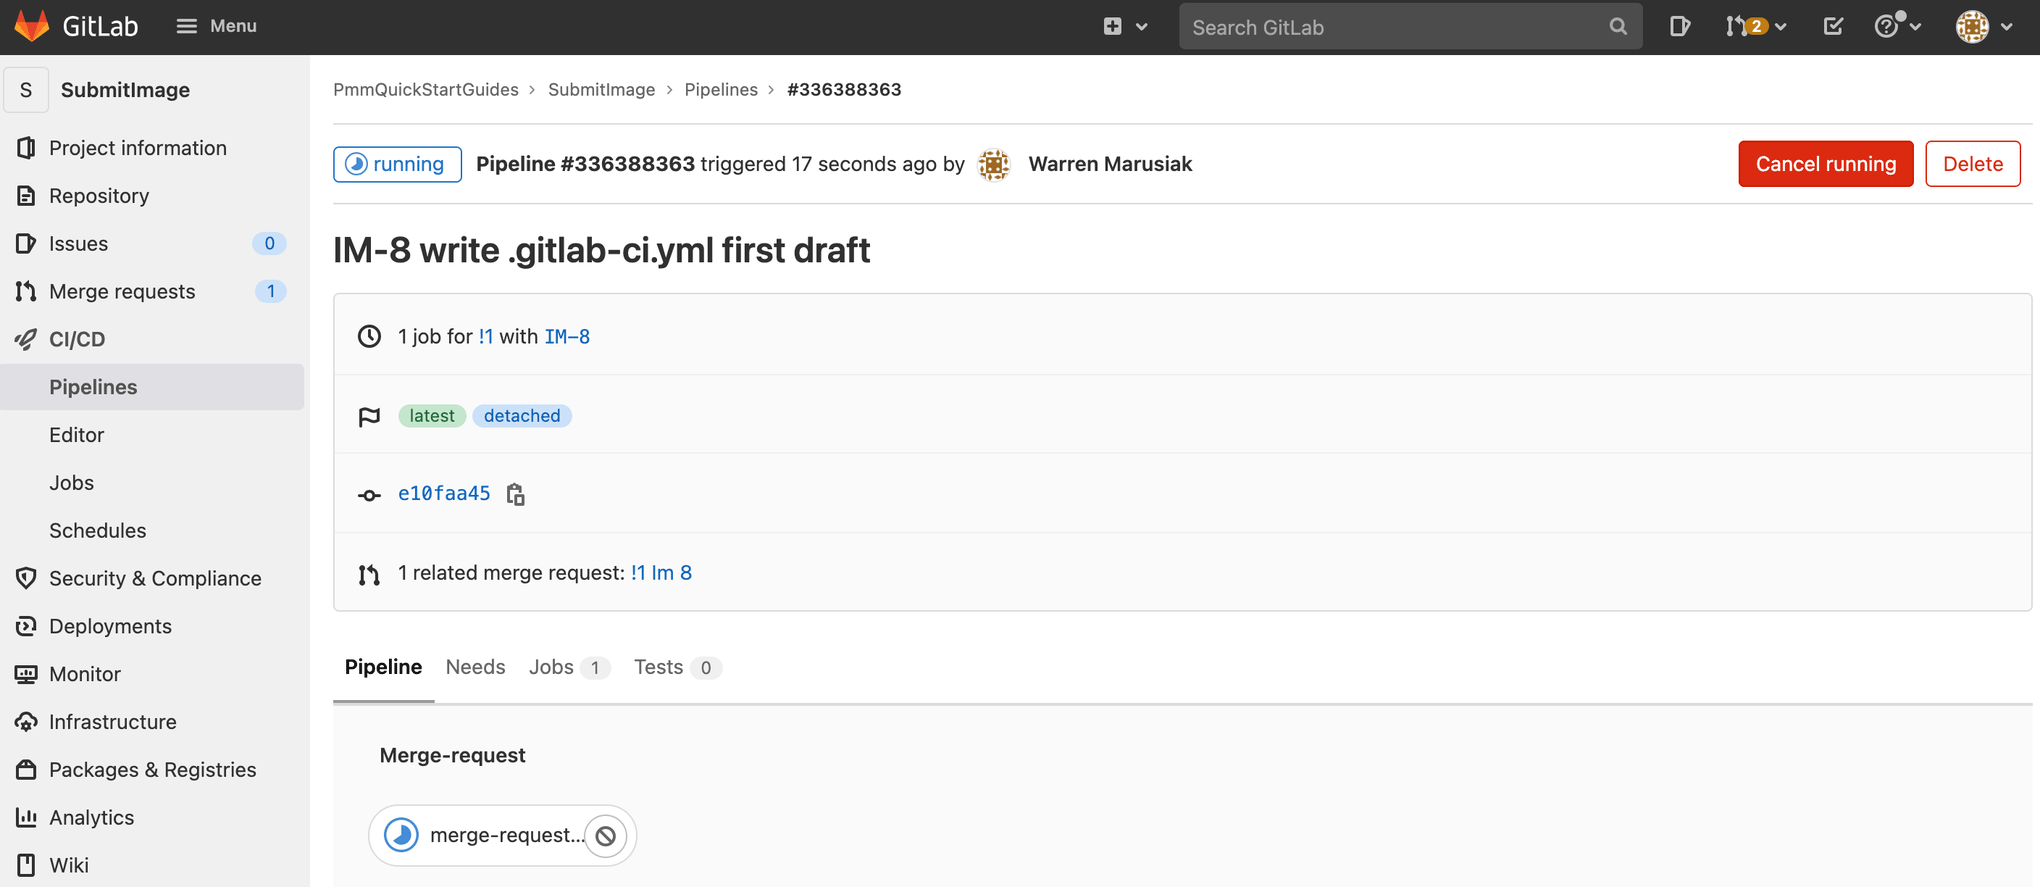 снимок экрана: запущенный запрос на слияние в GitLab